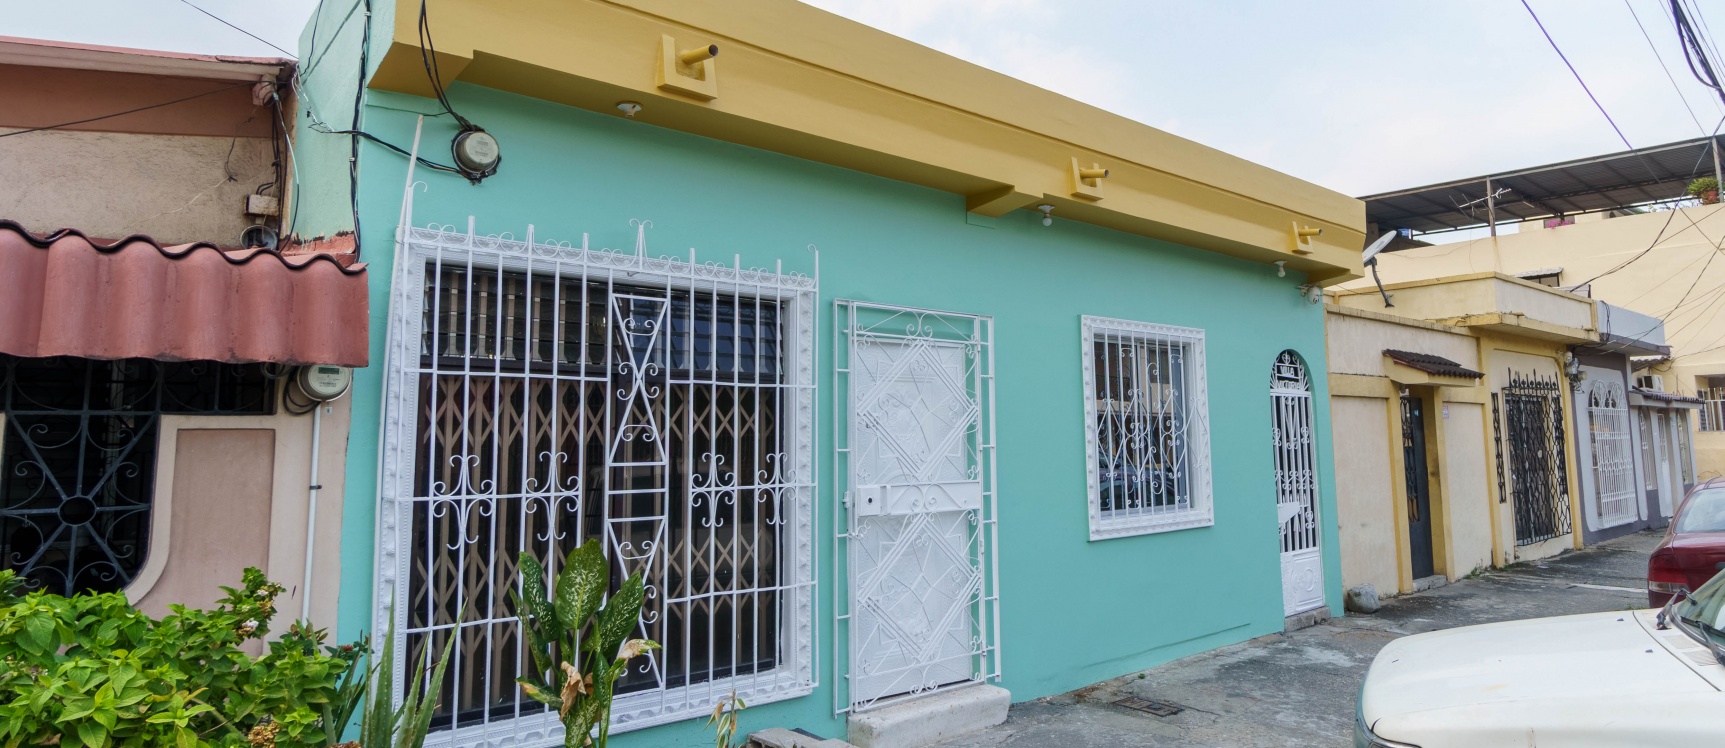 GeoBienes - Casa en alquiler ubicada en Sauces 1, Norte de Guayaquil - Plusvalia Guayaquil Casas de venta y alquiler Inmobiliaria Ecuador